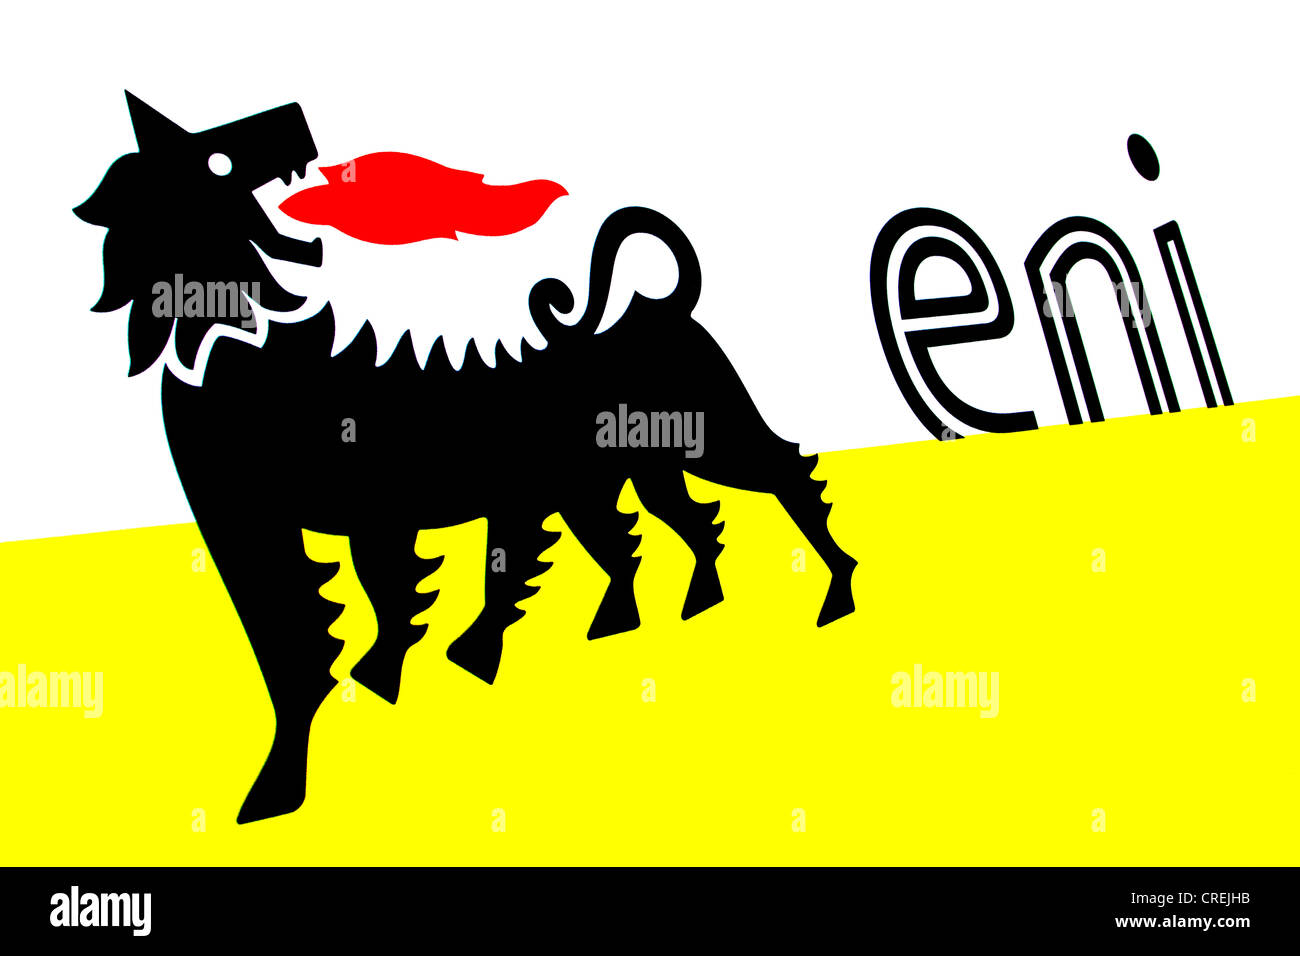 Logo von Eni, ein italienischer multinationalen Öl- und Gasfirma, größte Unternehmen Italiens mit einer Kette von Tankstellen in Deutschland Stockfoto